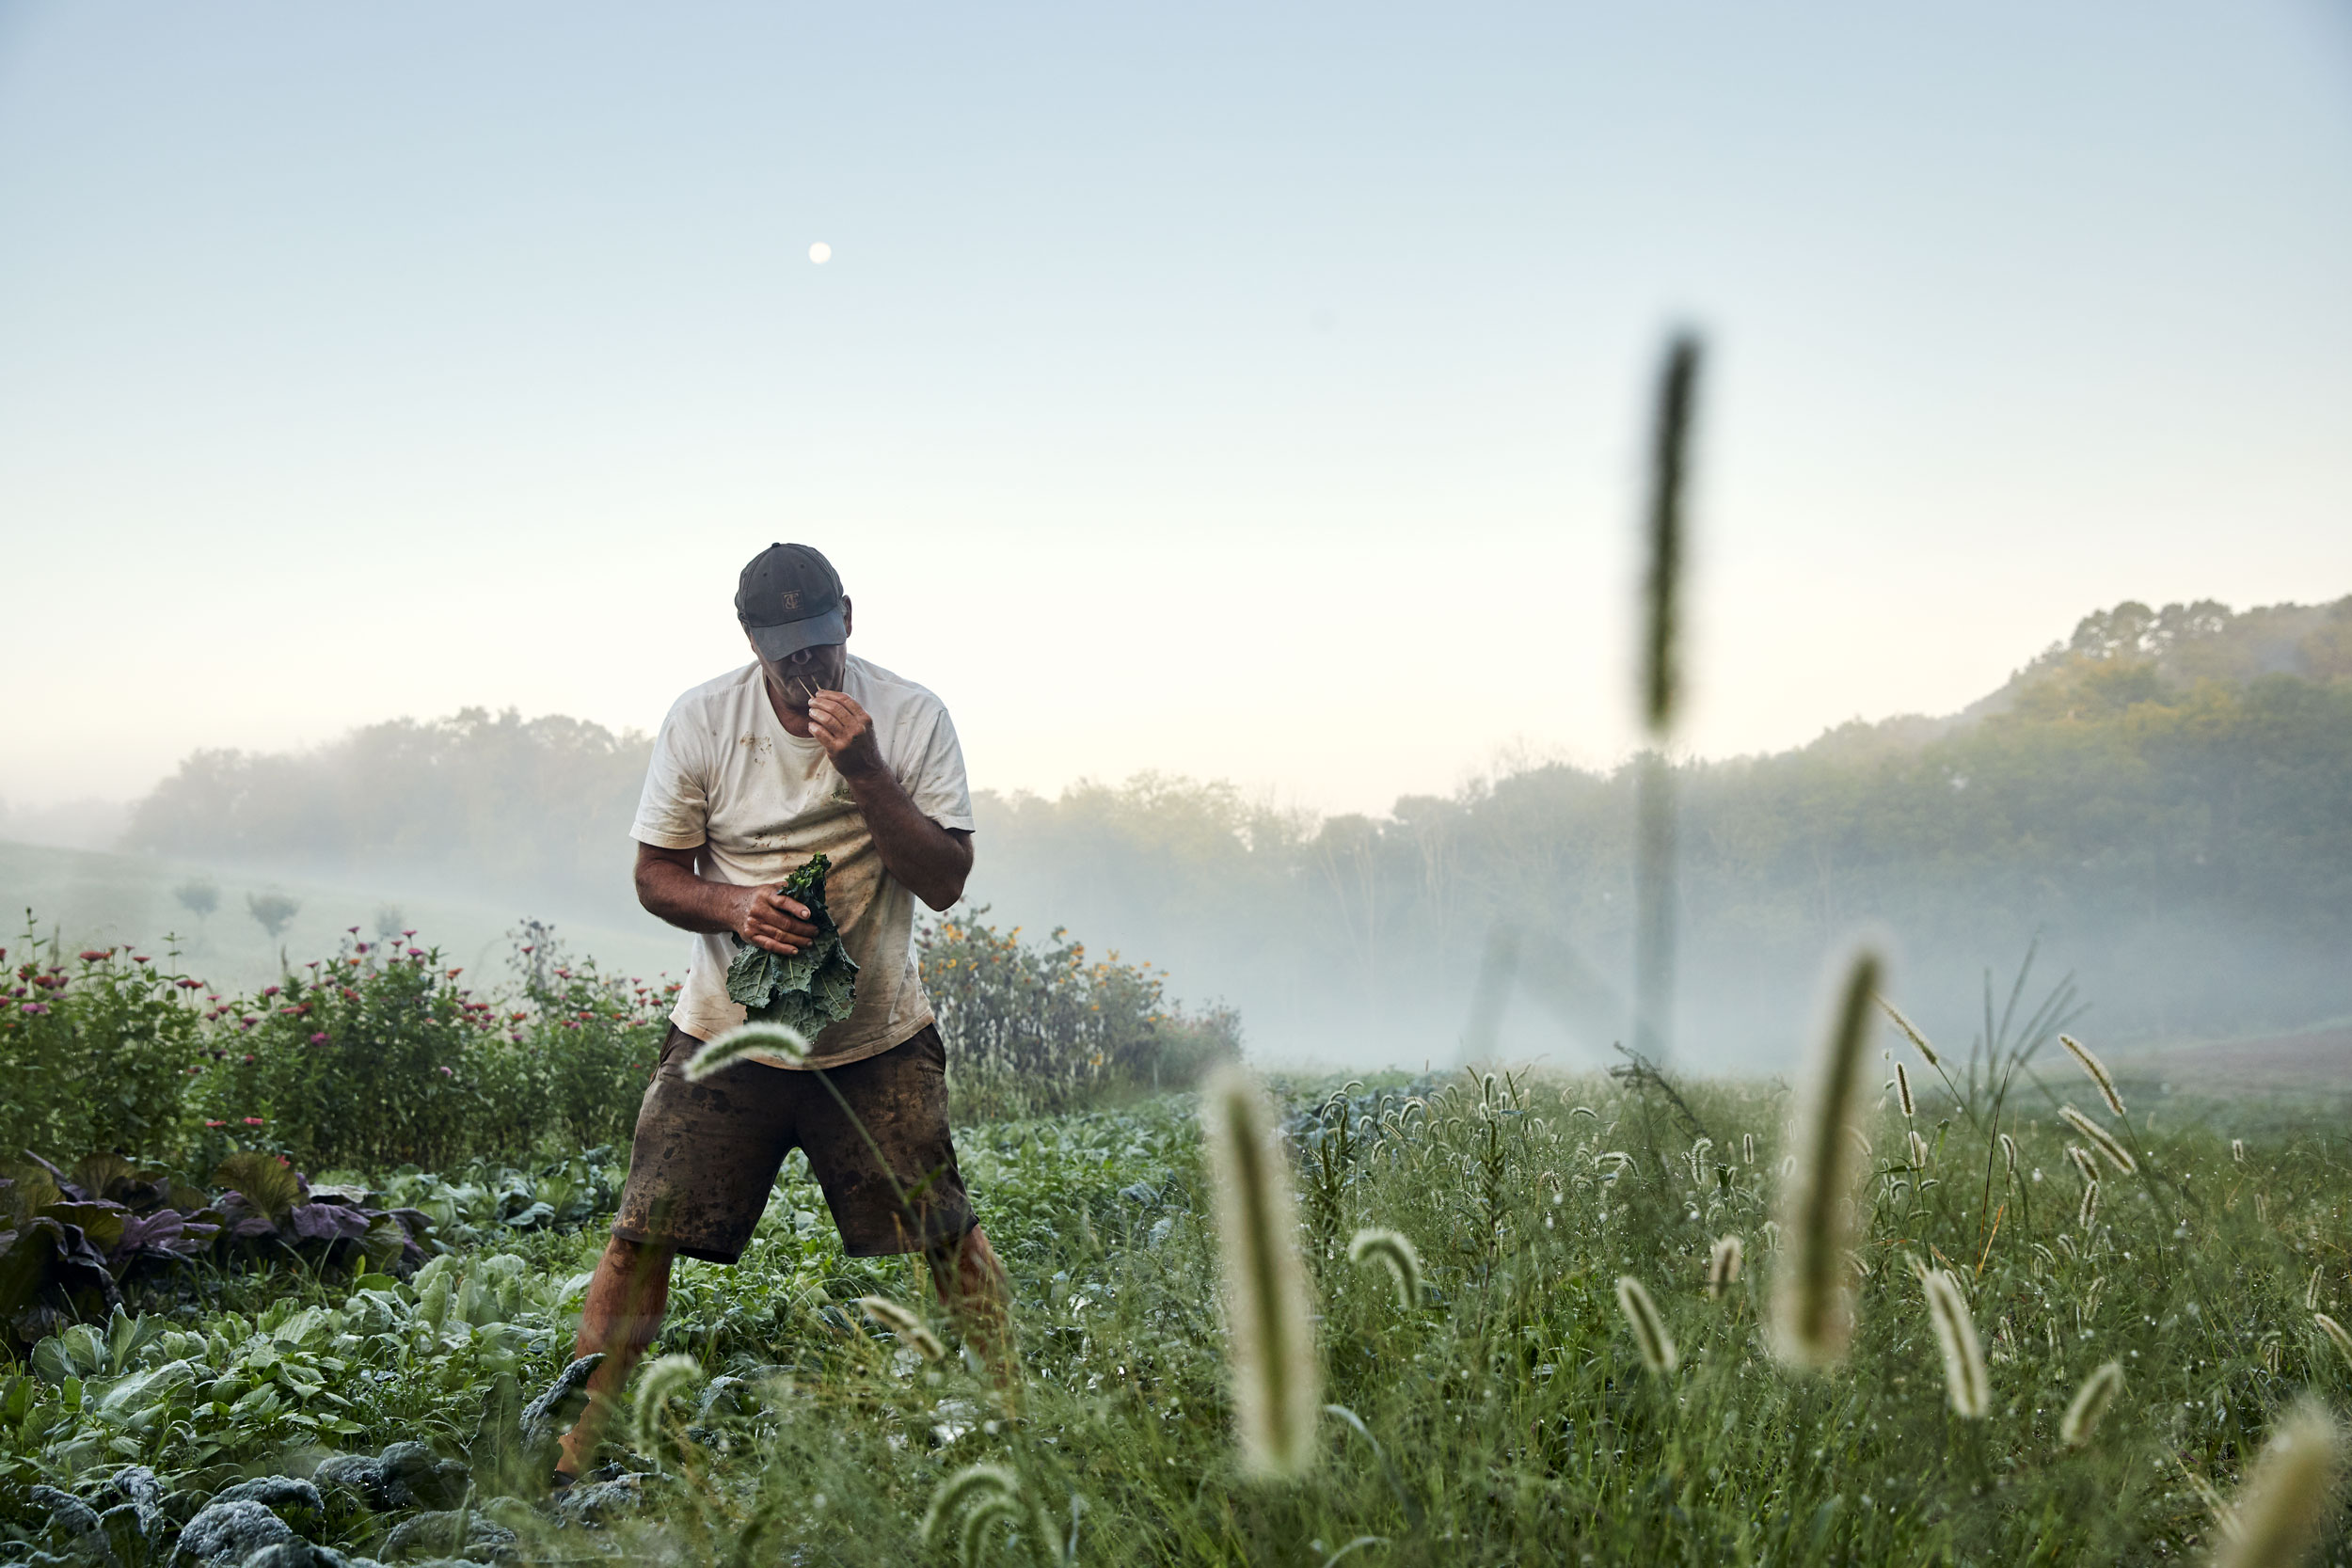 farmer-picking-kale-dmv-advertising-photographer-eli-meir-kaplan_v2